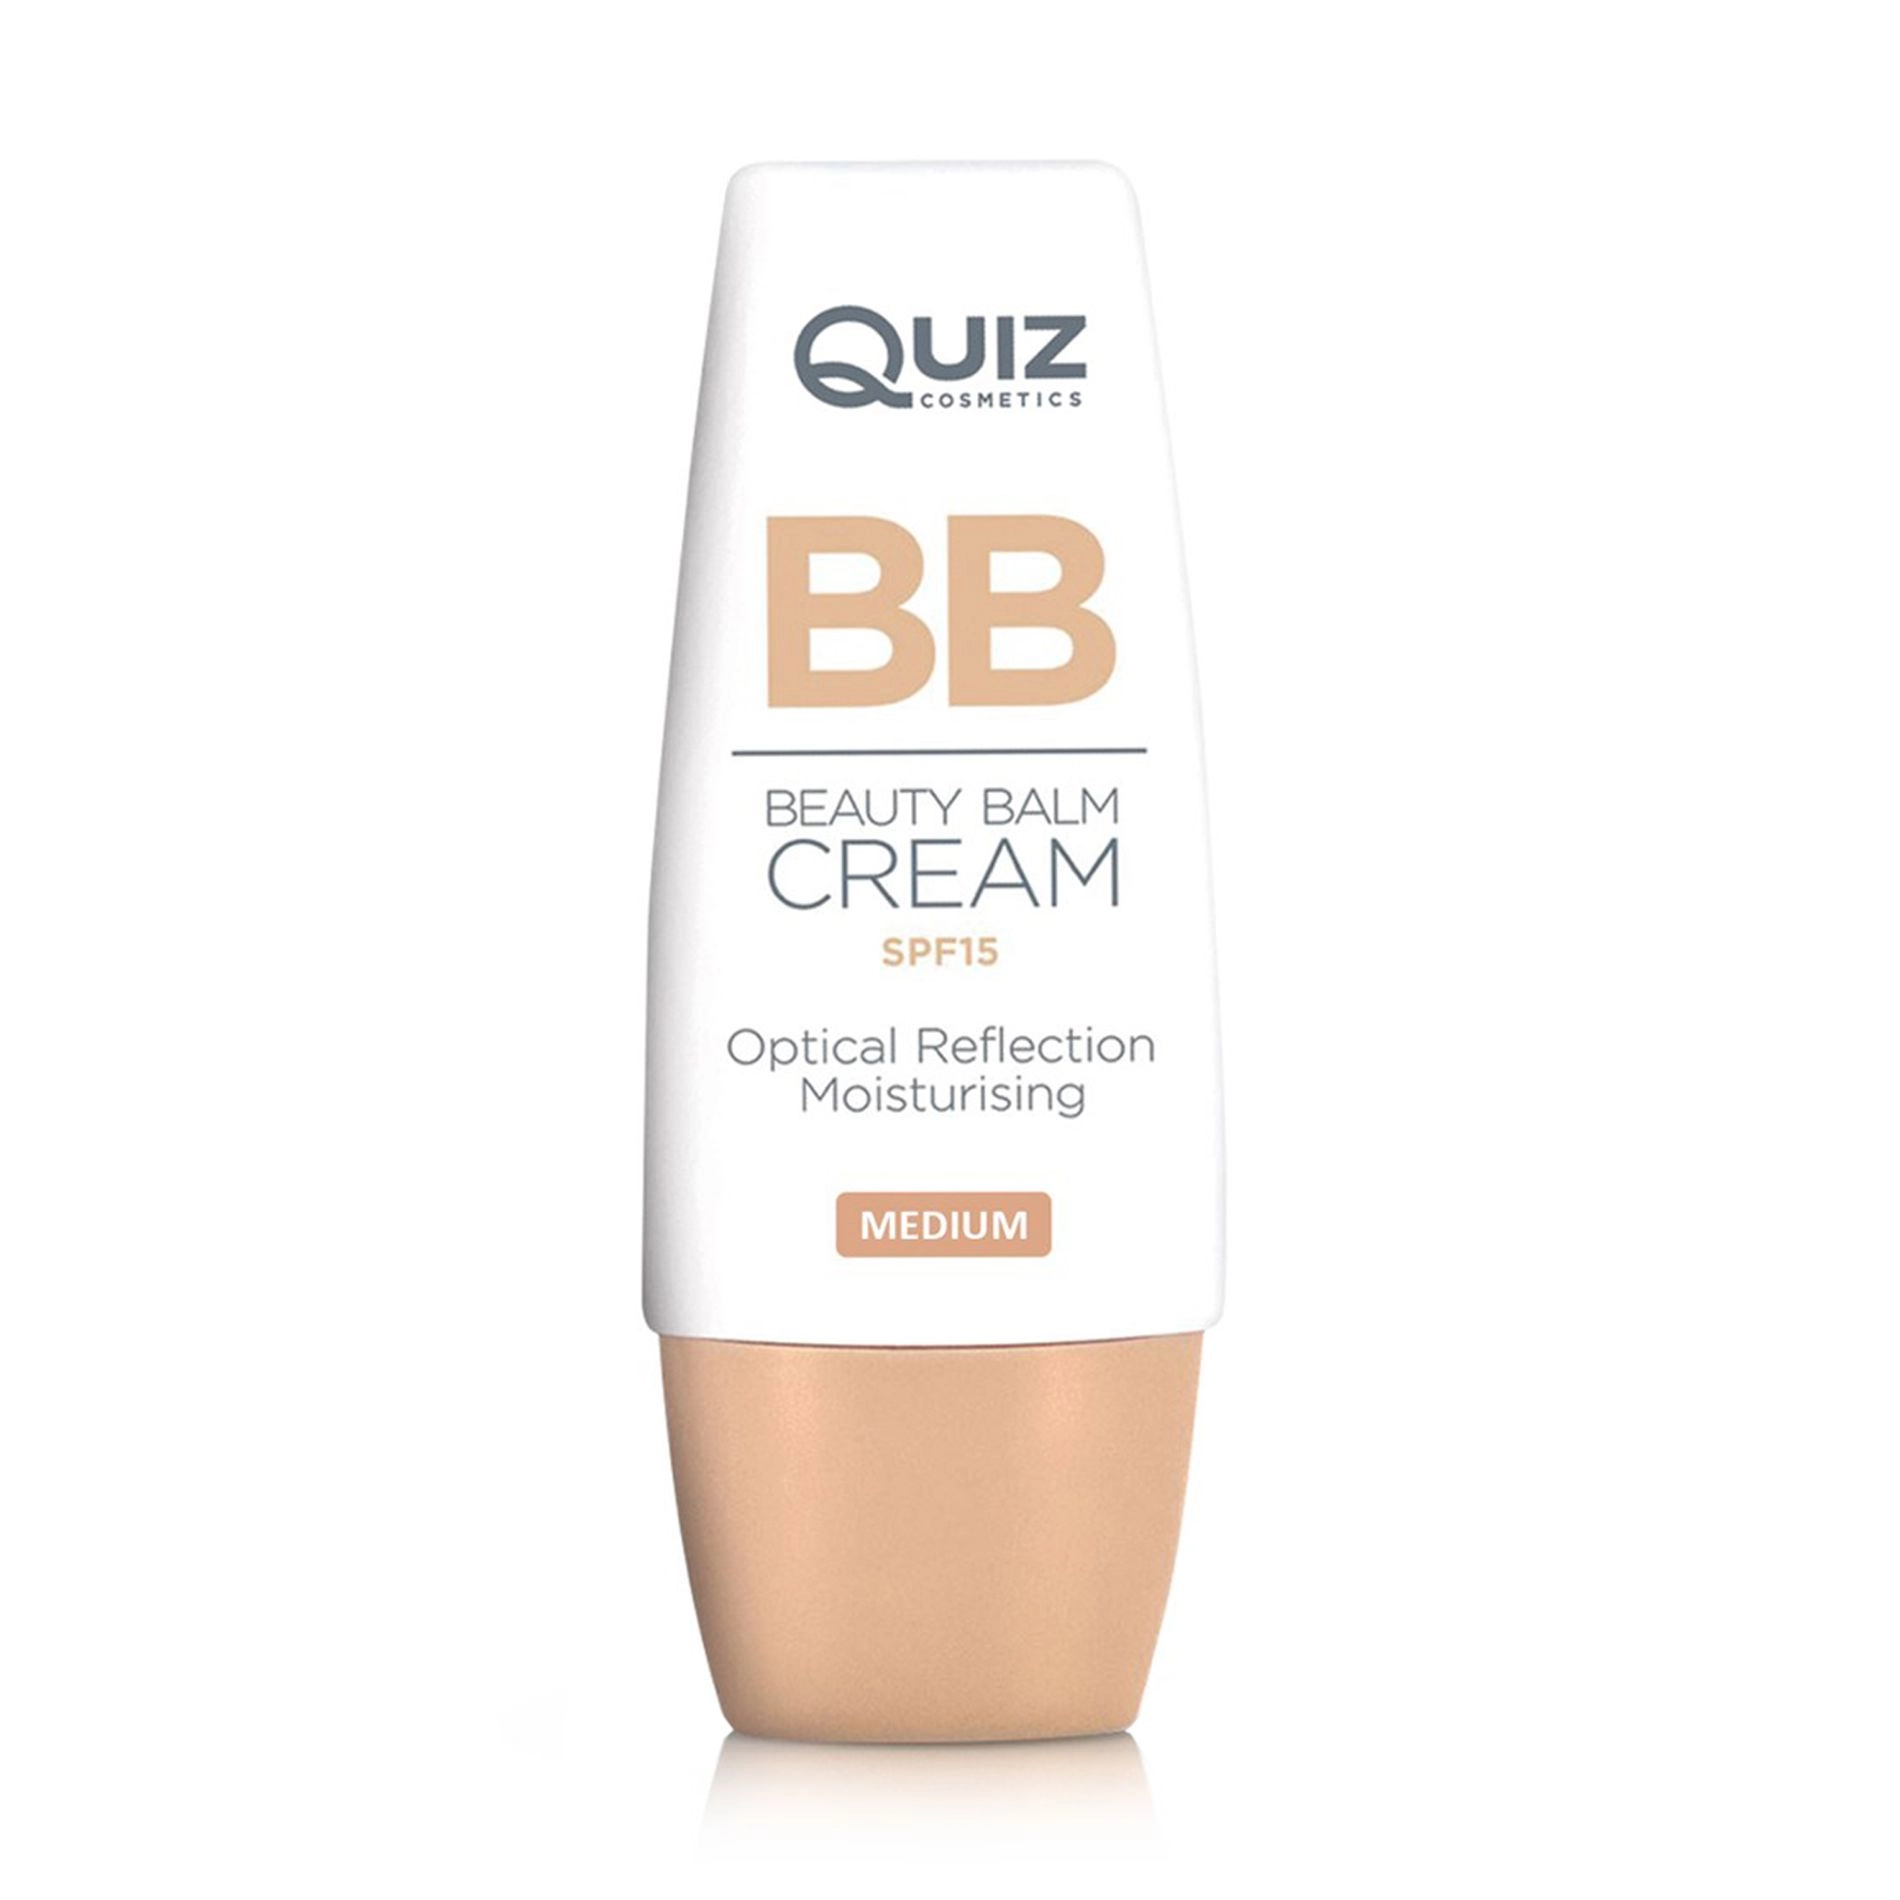 Quiz Тональный BB-крем для лица Cosmetics BB Beauty Balm Cream SPF15, 02 Medium, 30 мл - фото N1